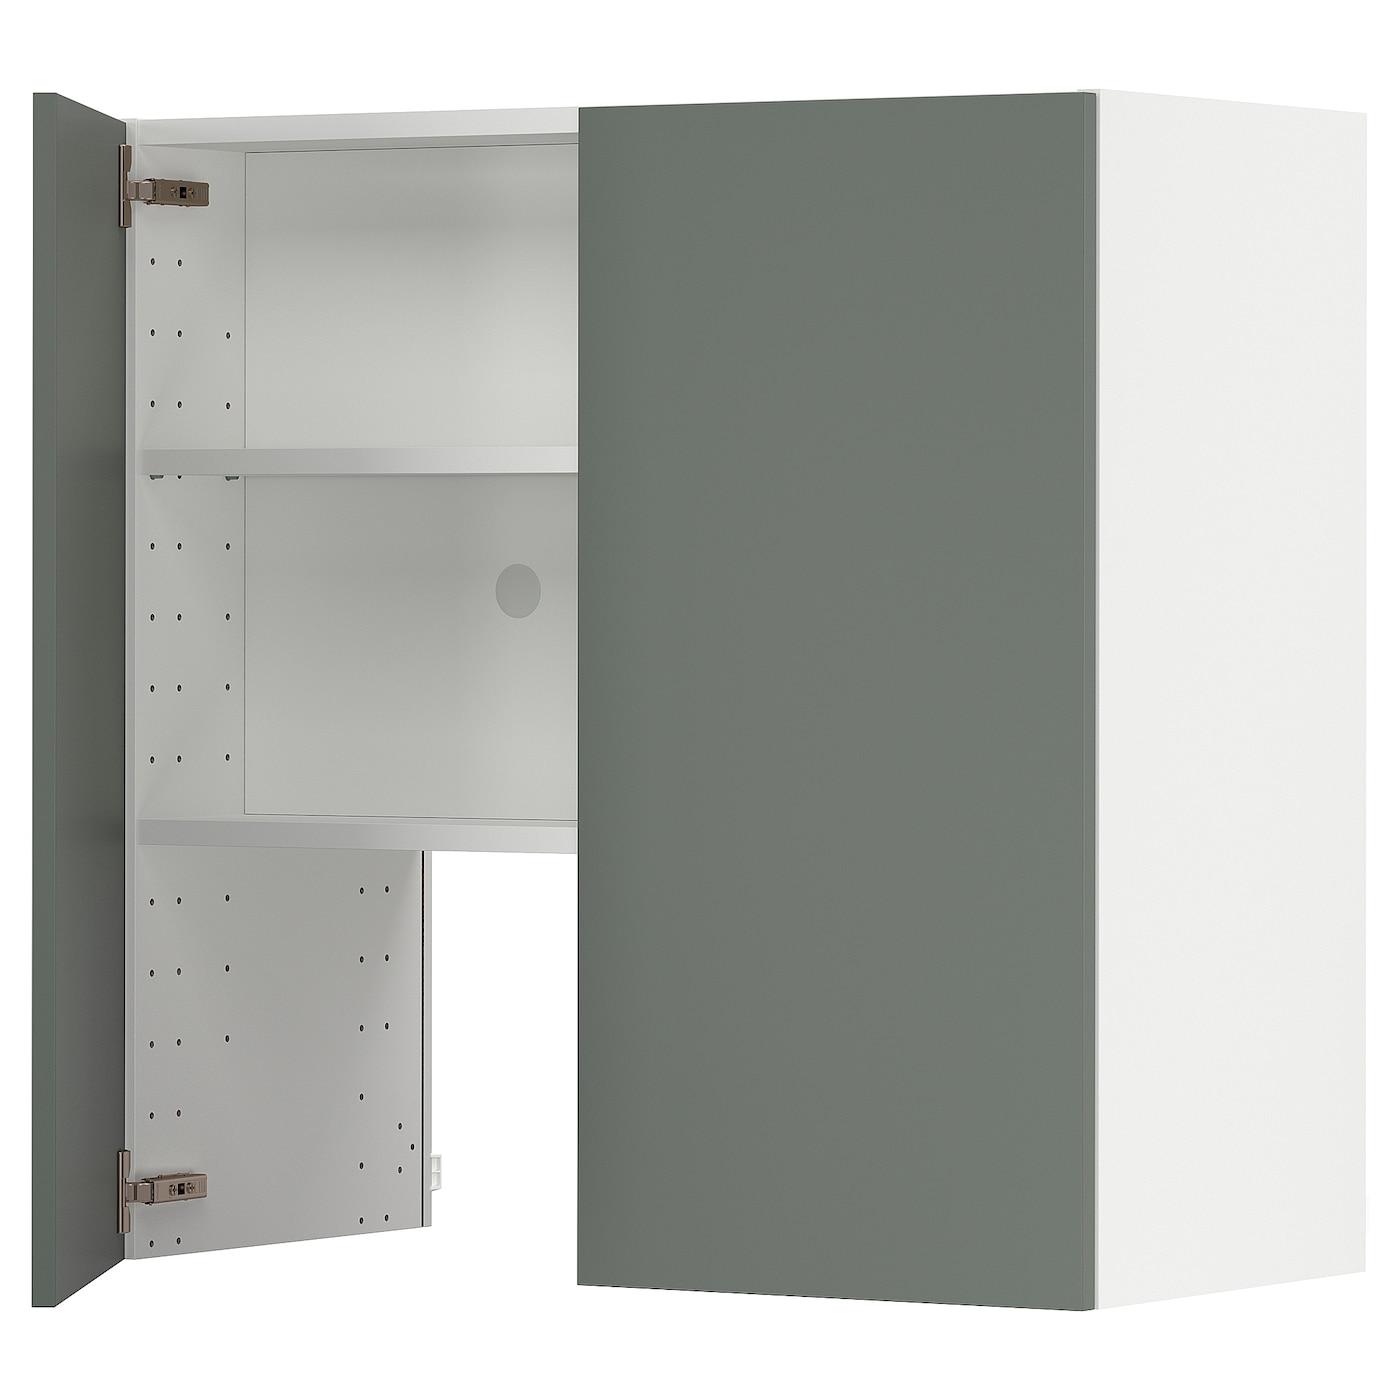 Навесной шкаф с полкой - METOD IKEA/ МЕТОД ИКЕА, 80х80 см, белый/темно-зеленый